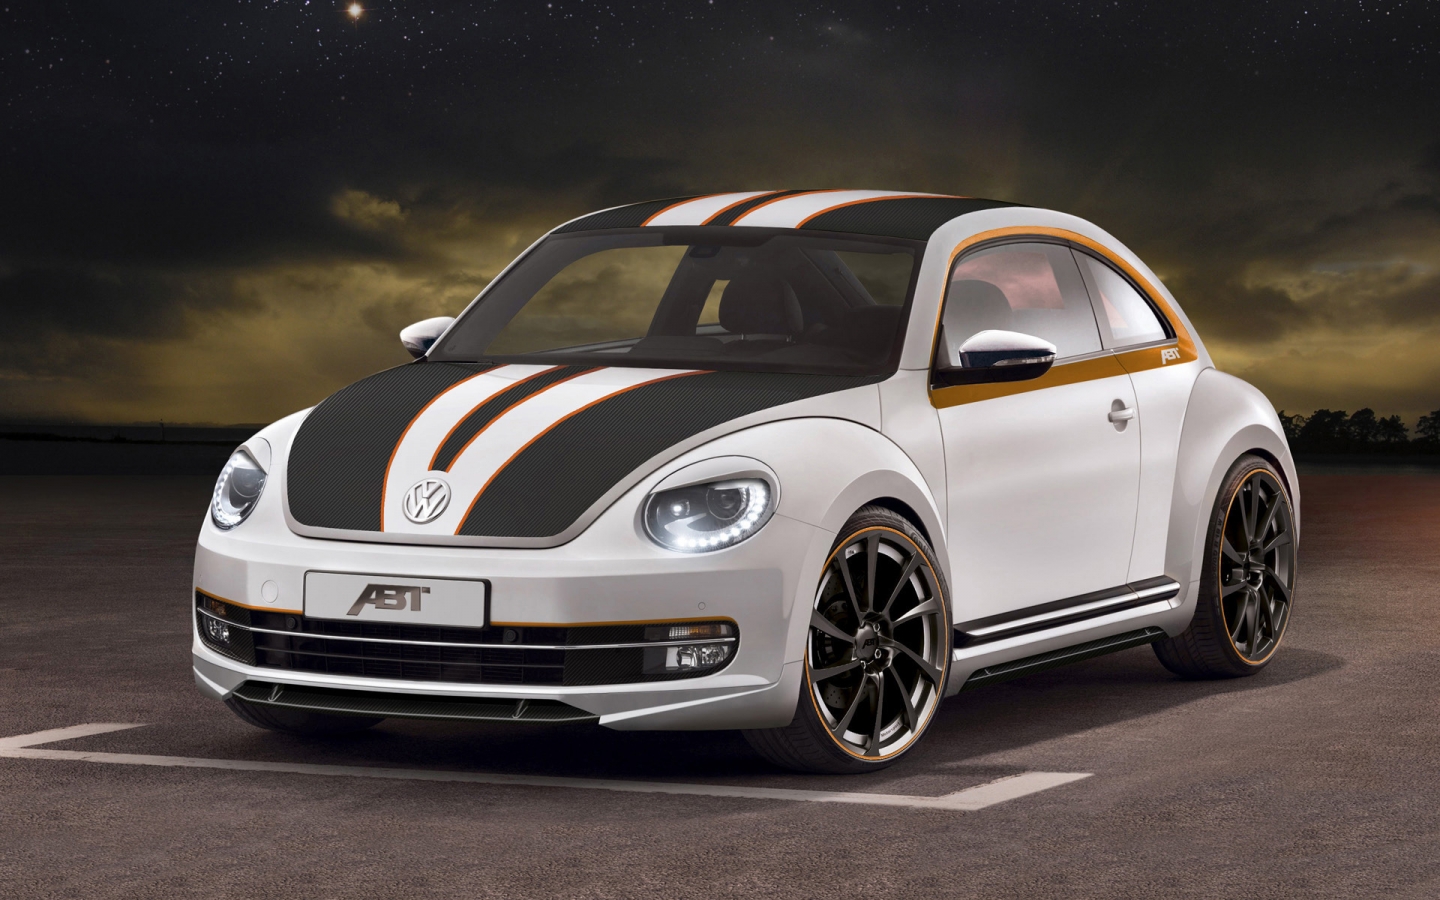 2012 ABT Volkswagen Beetle for 1440 x 900 widescreen resolution